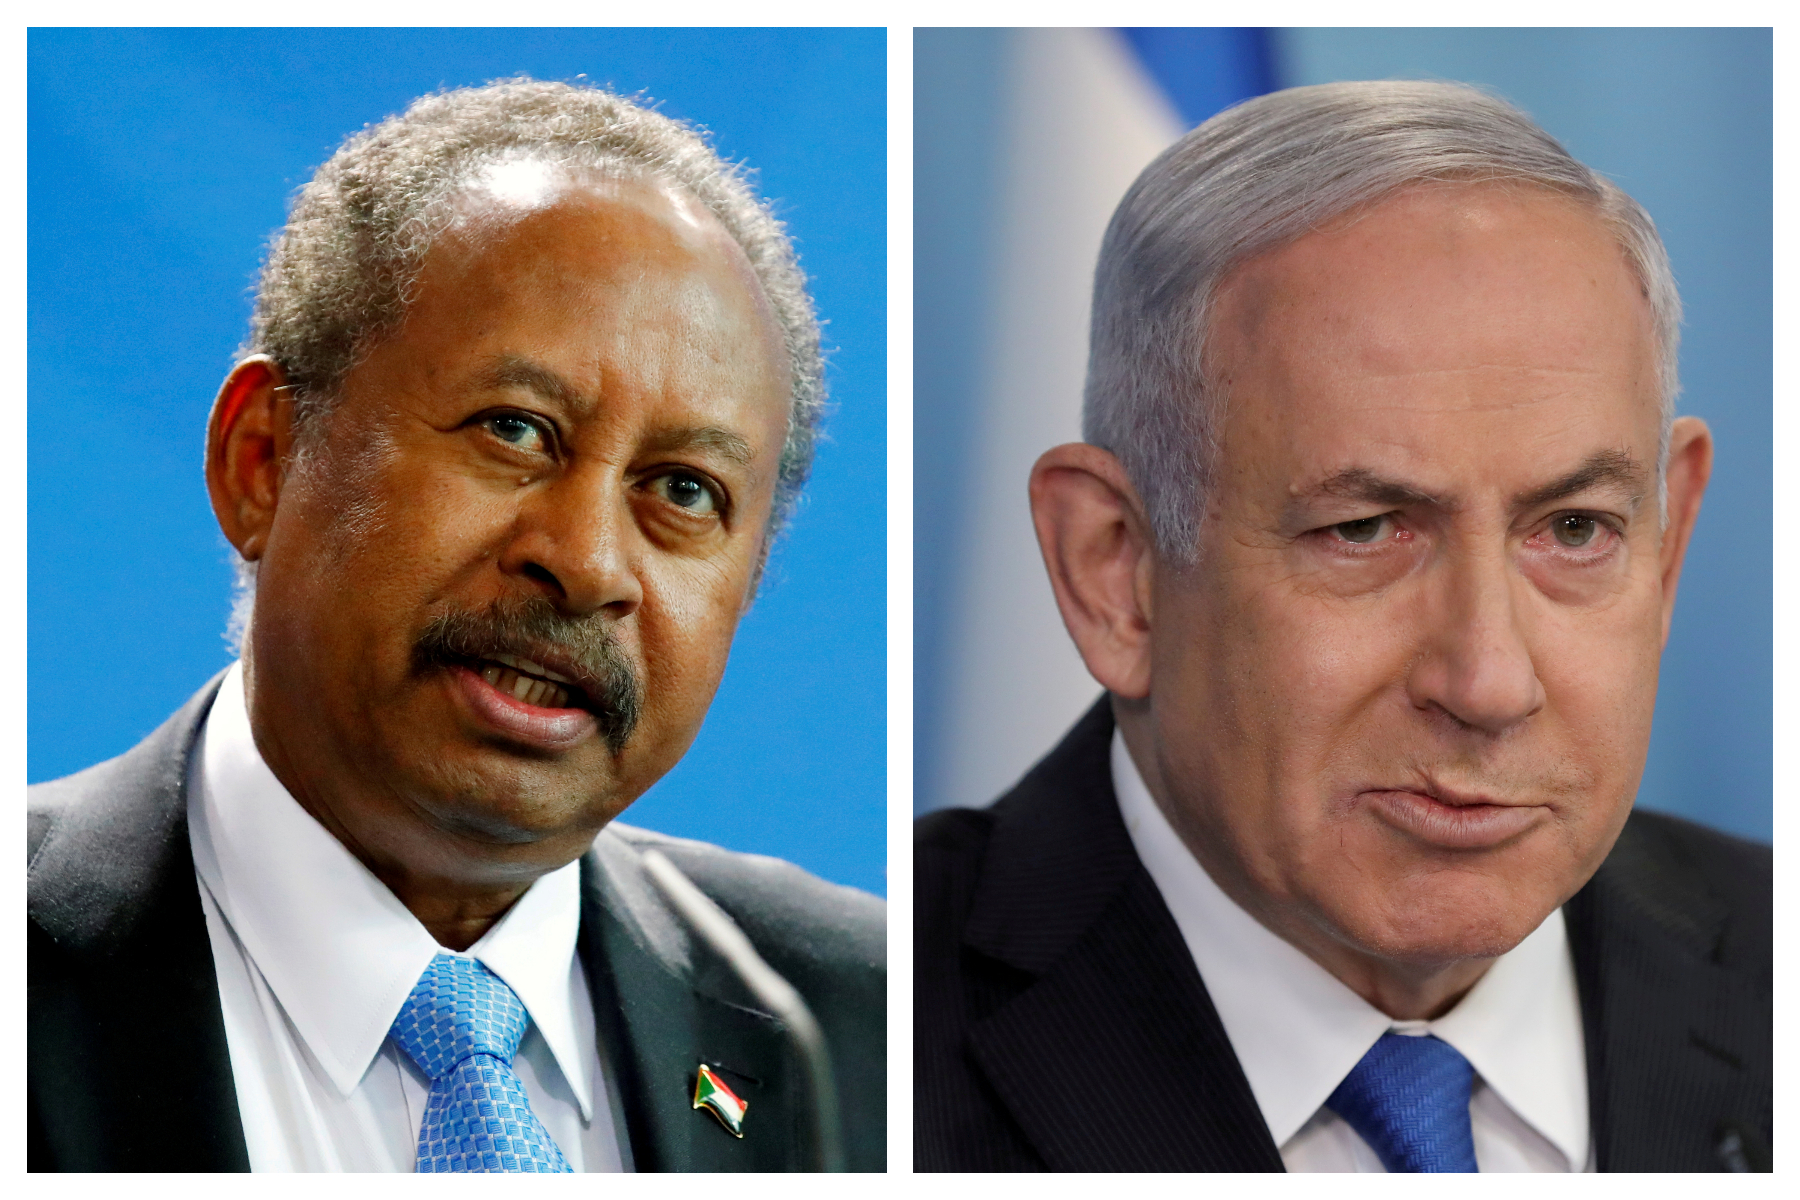 Ιστορική συμφωνία συμφιλίωσης ανάμεσα σε Σουδάν και Ισραήλ